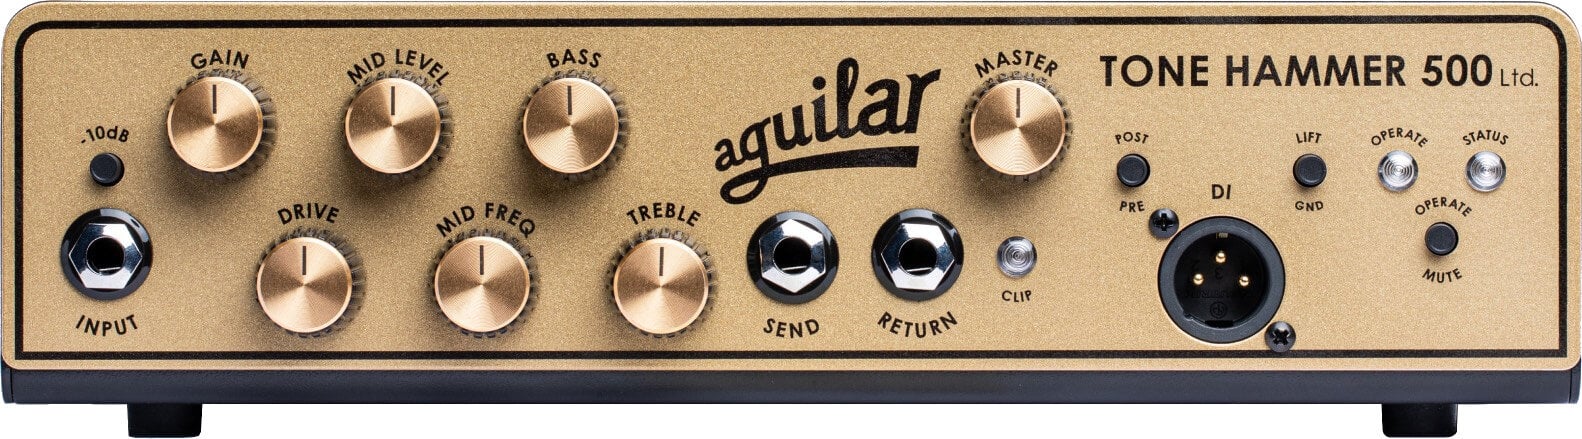 Transistor basversterker Aguilar Tone Hammer 500 Gold